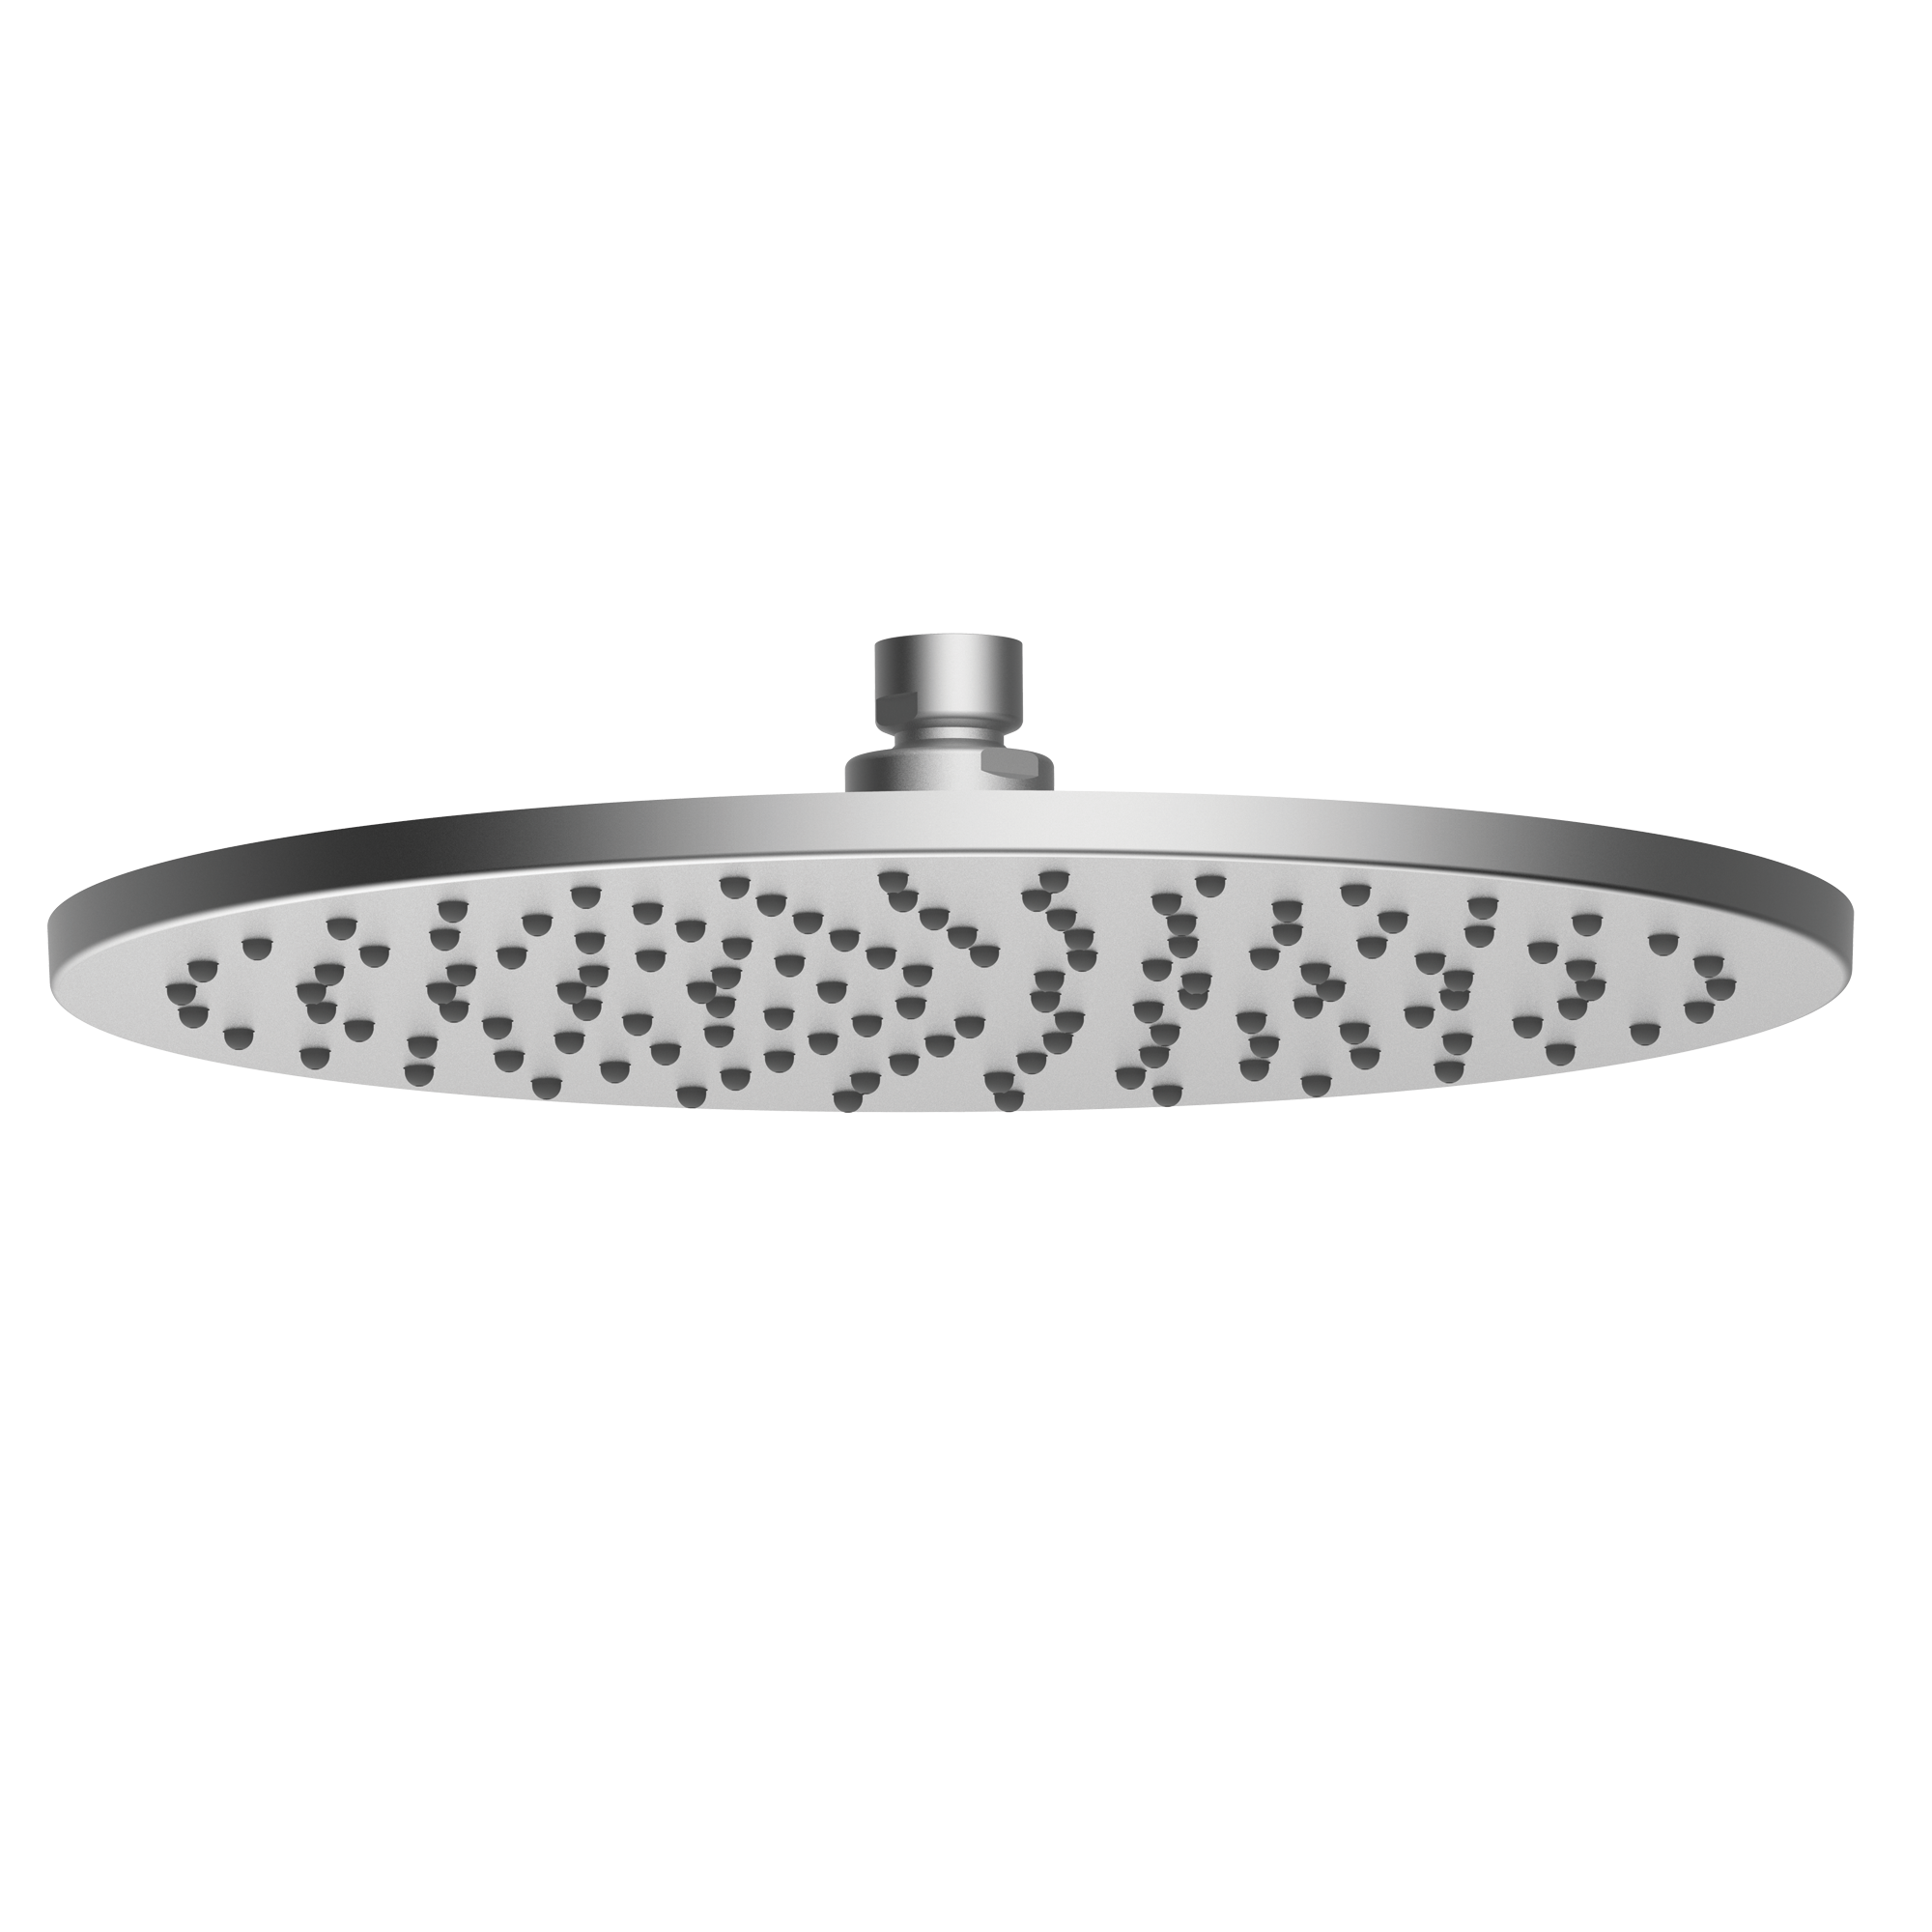 Верхний душ BOSSINI NOBU INI030.075 280 мм, из стали Inox, цвет Матовая нержавеющая сталь